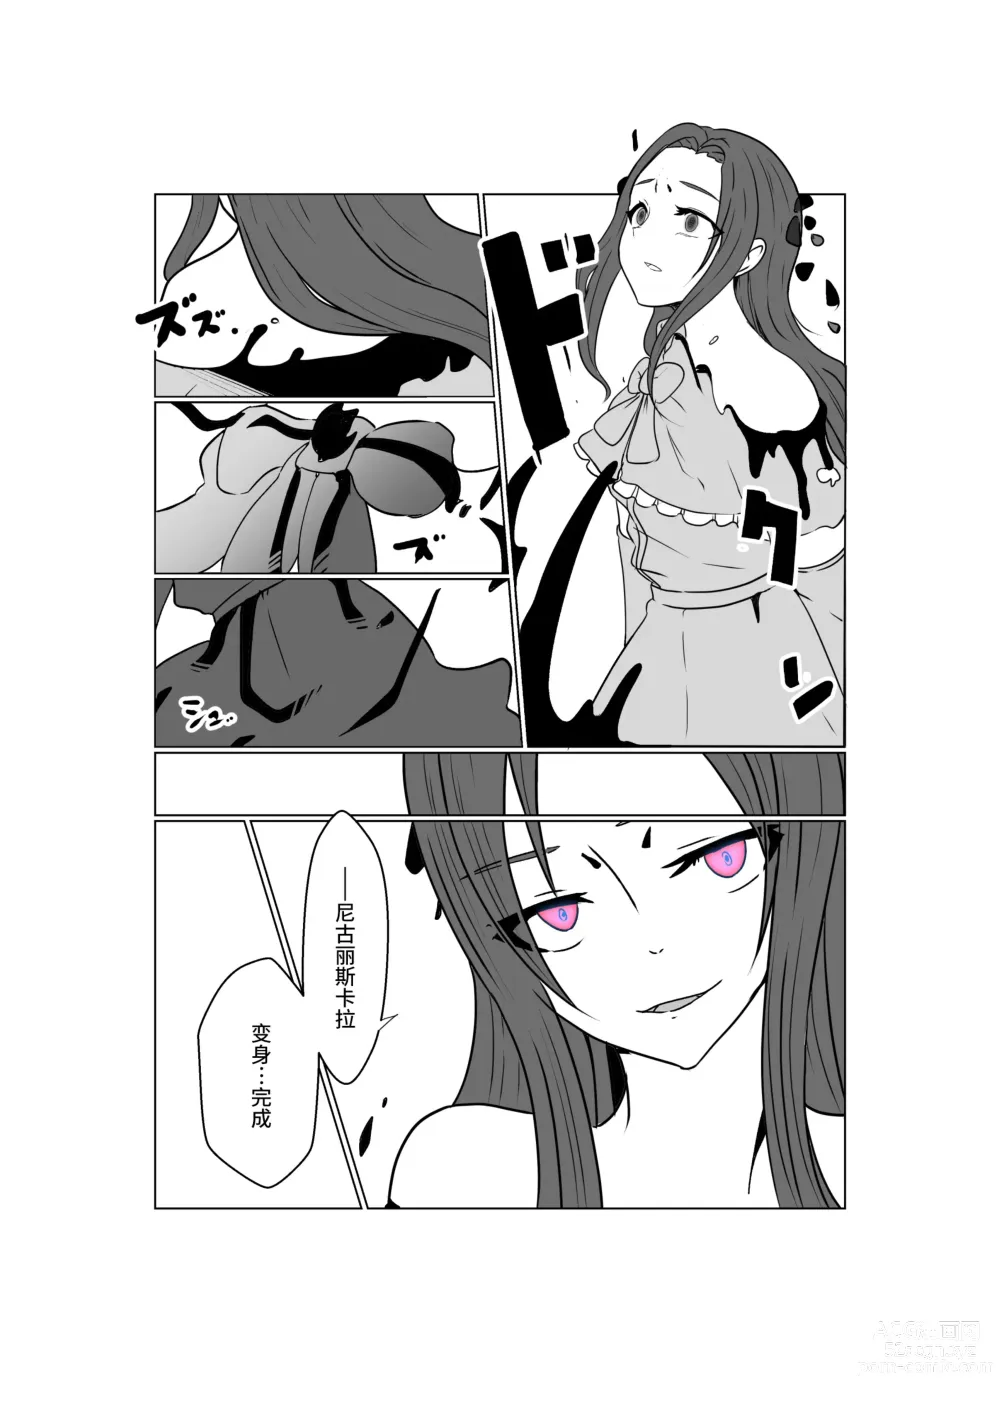 Page 64 of doujinshi Aku no Hana Vol.3 Skeb+α Matome